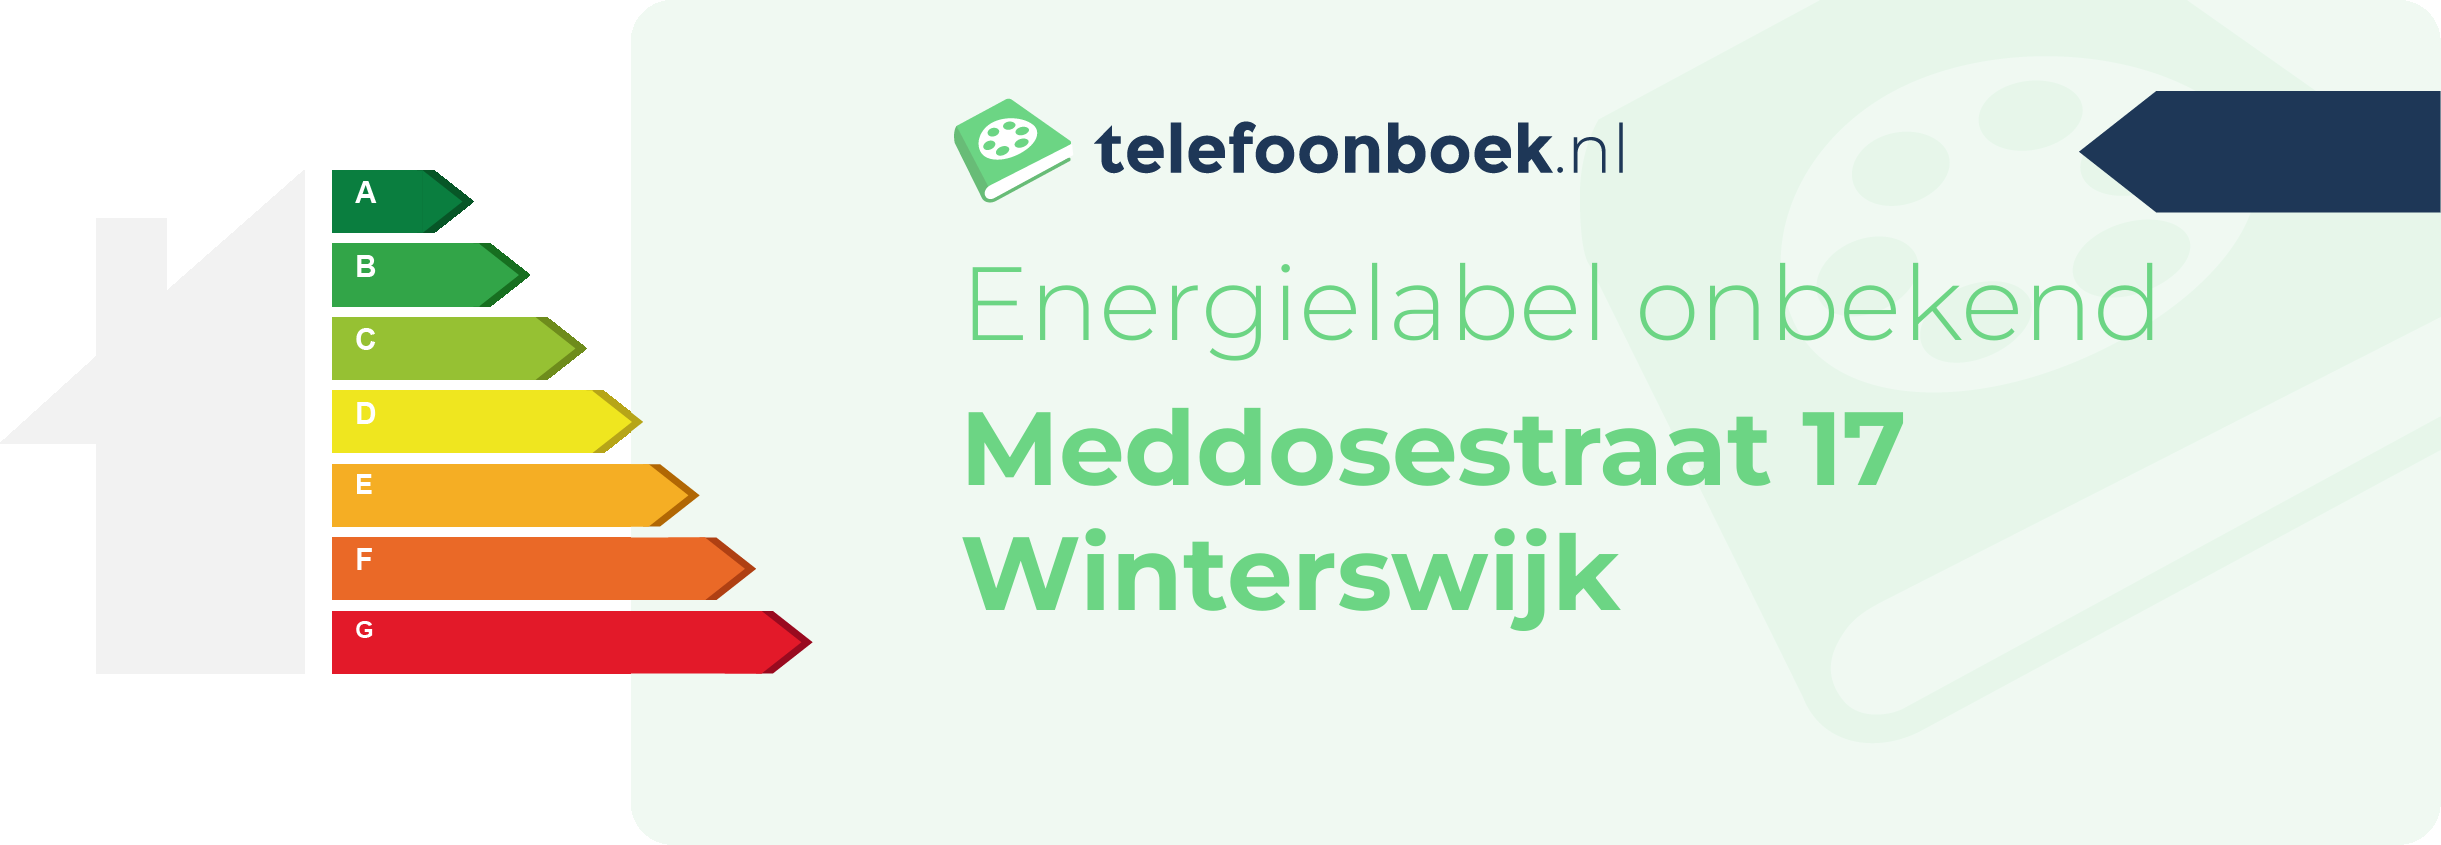 Energielabel Meddosestraat 17 Winterswijk